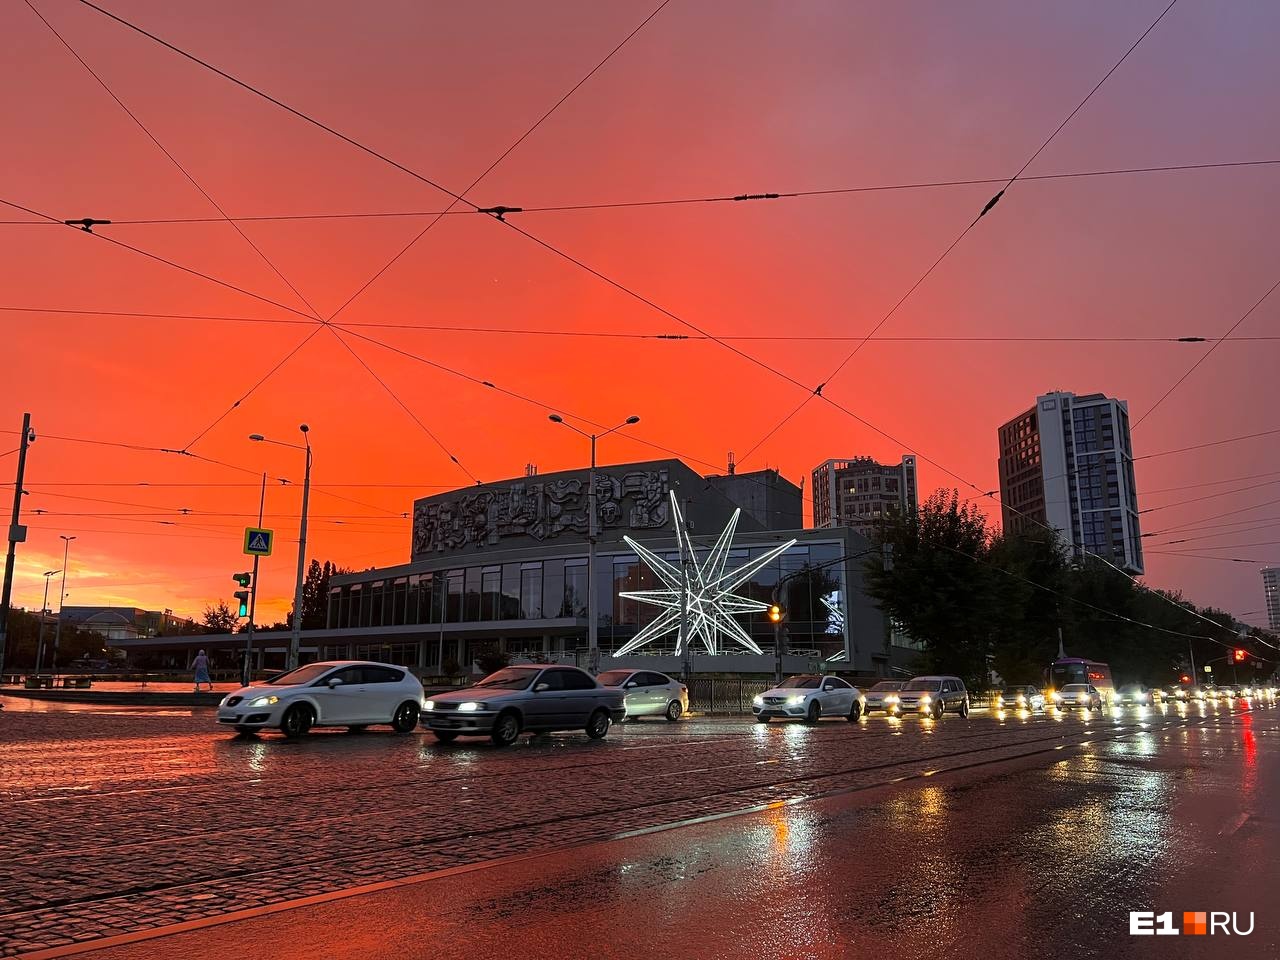 Ты горишь как огонь! 15 завораживающих фотографий заката в Екатеринбурге от читателей E1.RU